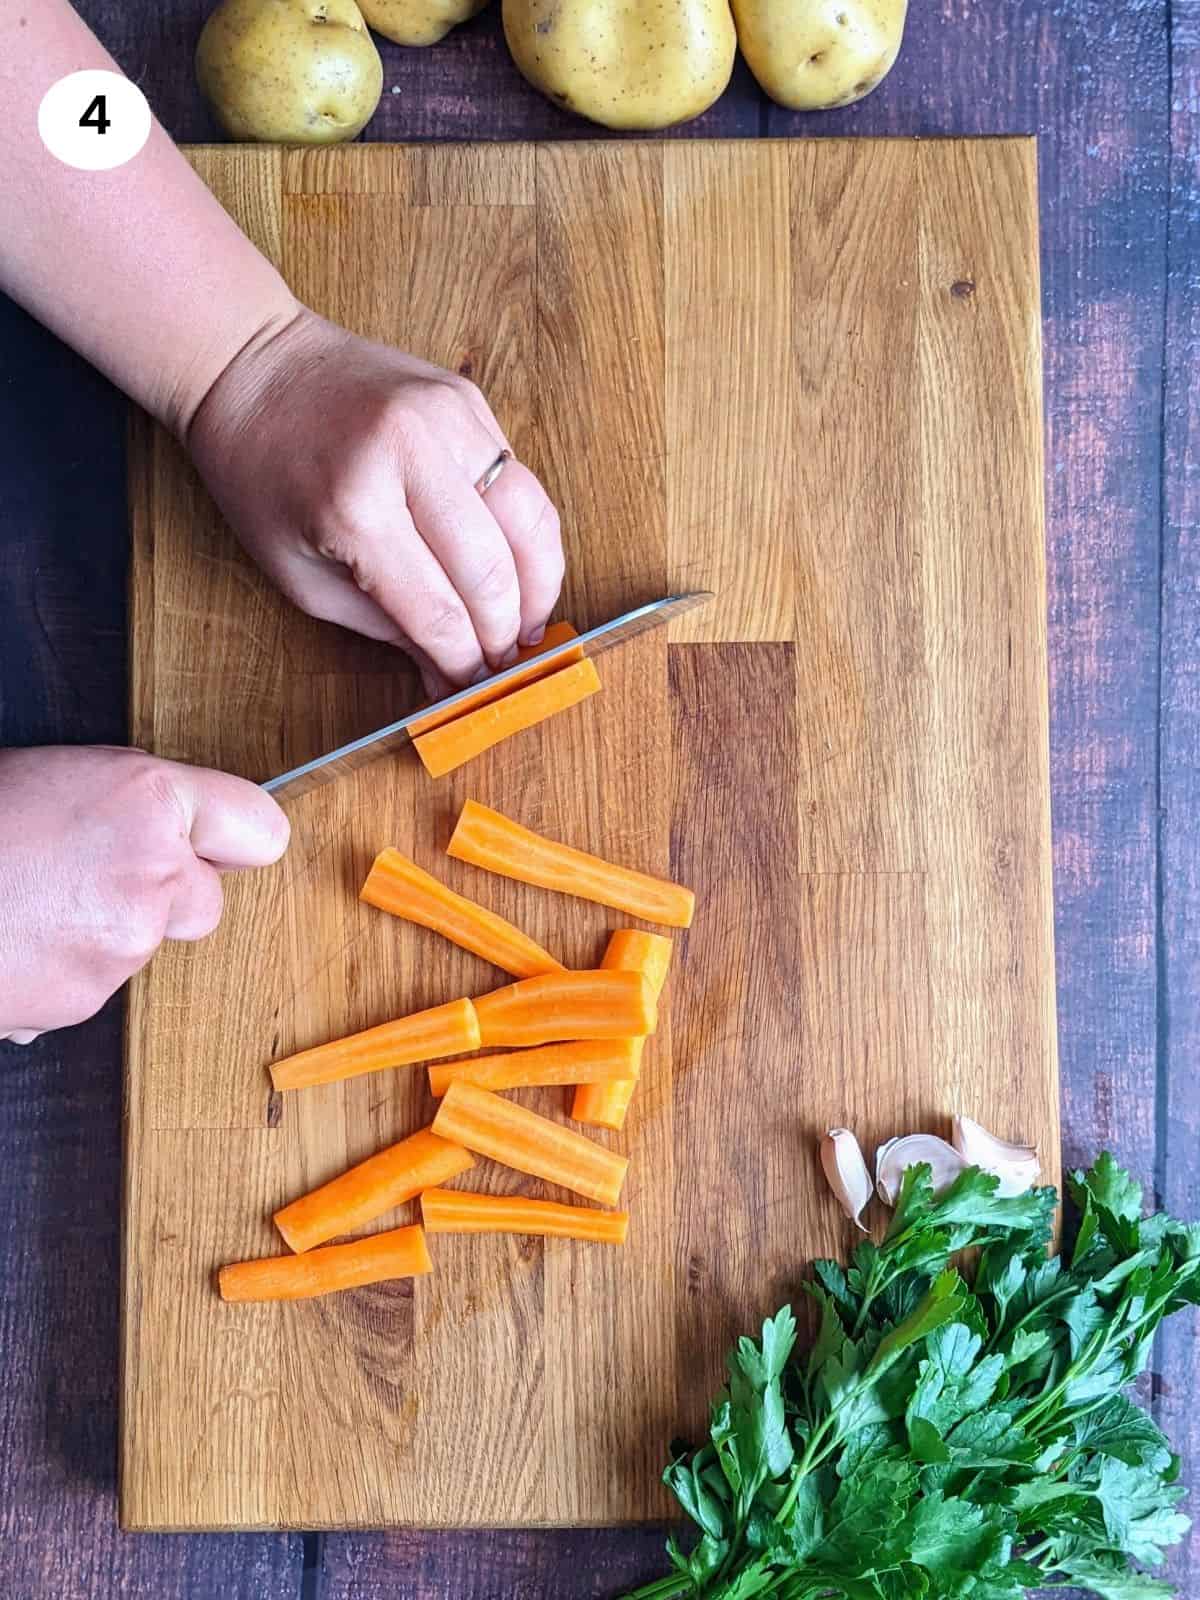 Κόβωντας τα καρότα σε μπαστουνάκια.